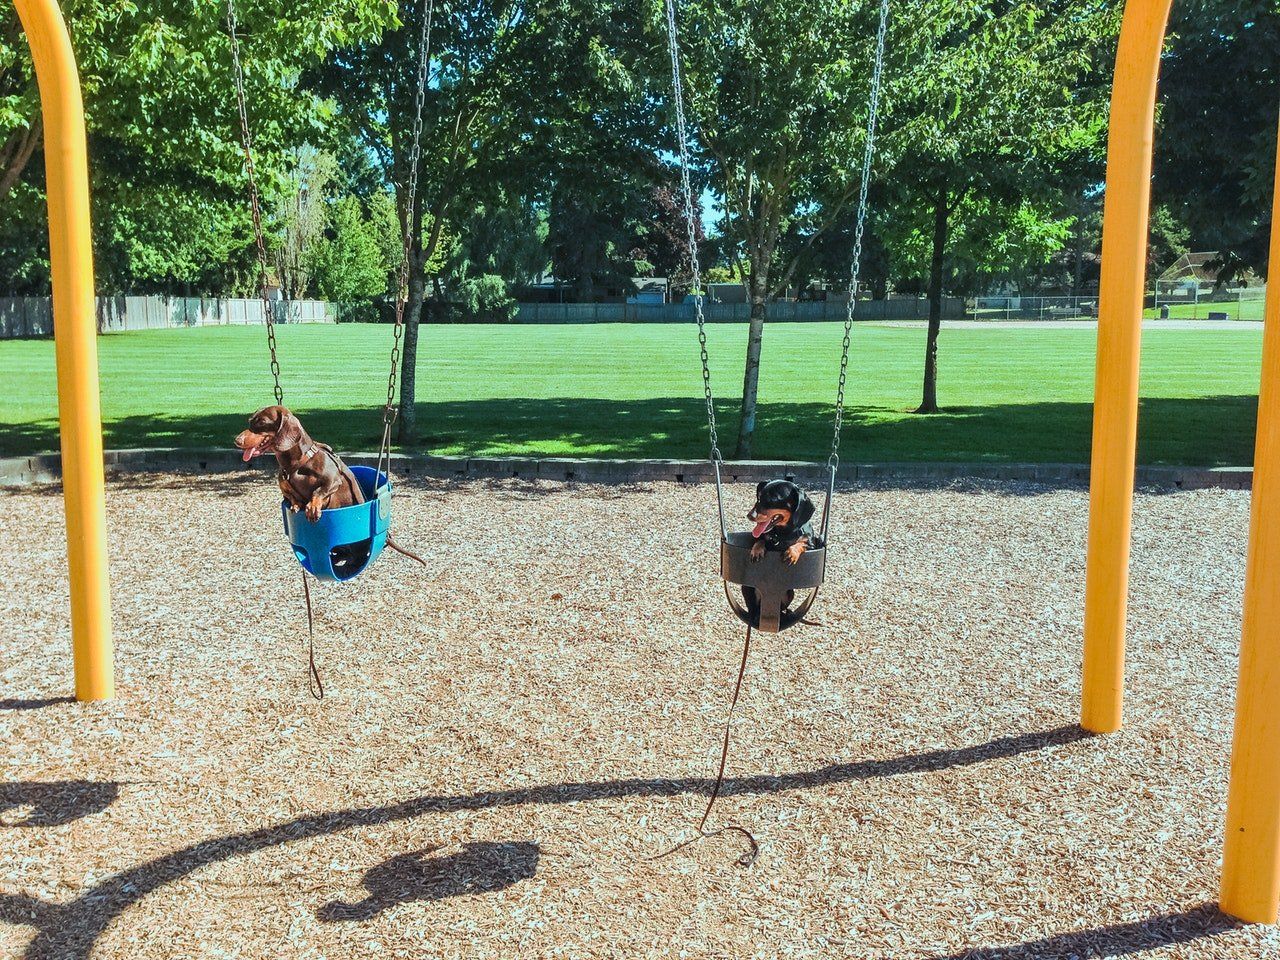 dachshunds sitting in swings 